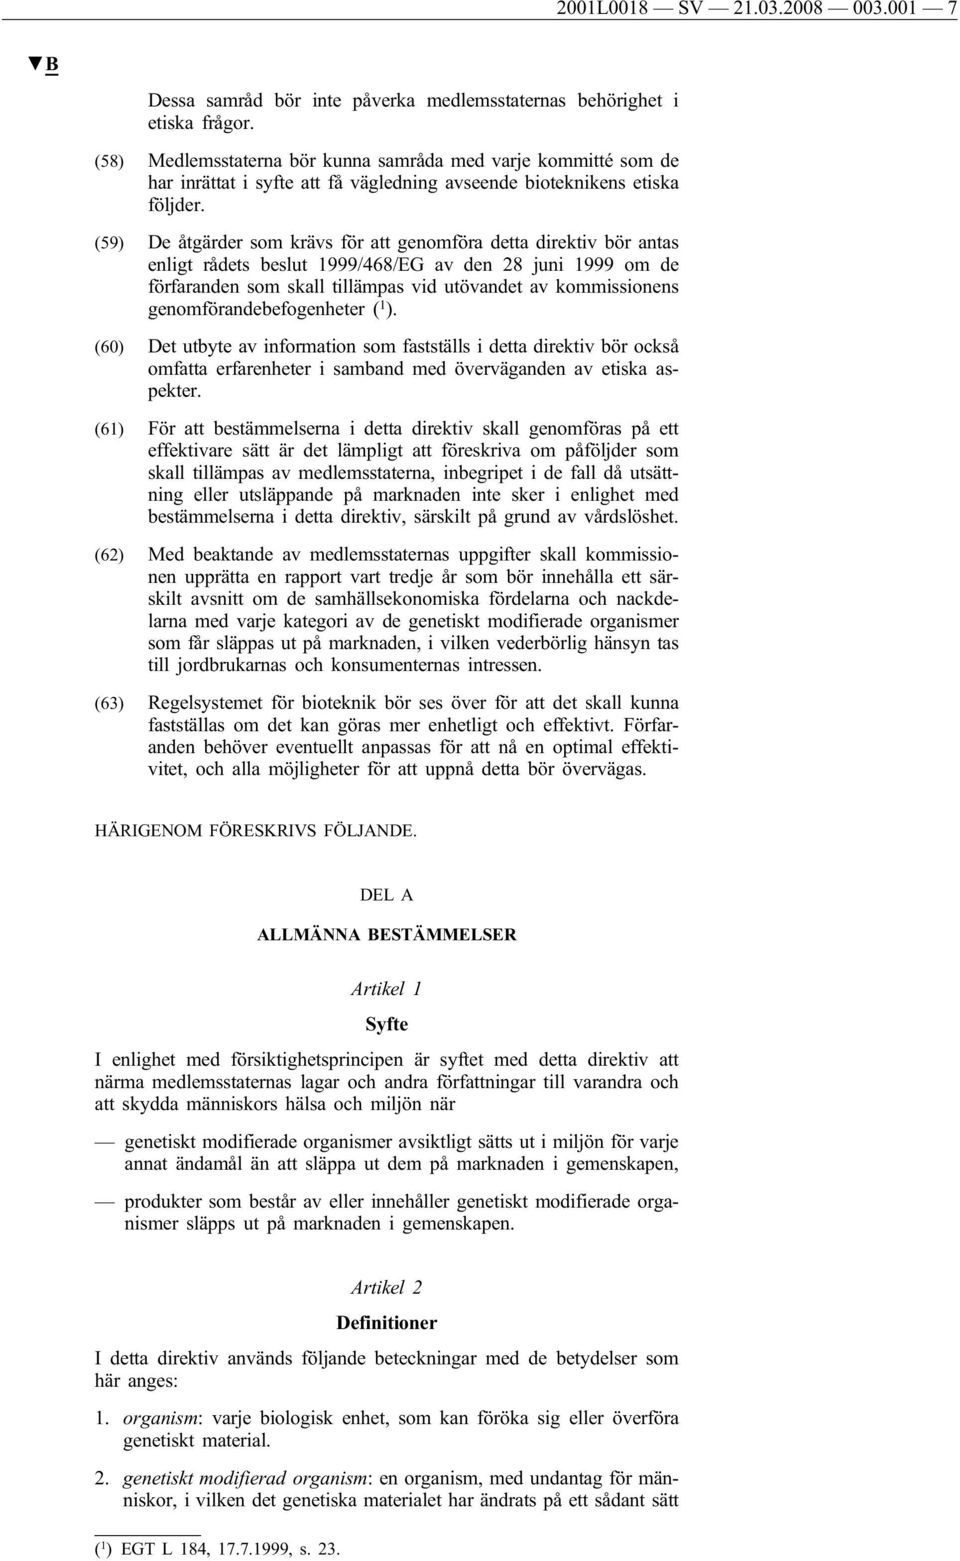 (59) De åtgärder som krävs för att genomföra detta direktiv bör antas enligt rådets beslut 1999/468/EG av den 28 juni 1999 om de förfaranden som skall tillämpas vid utövandet av kommissionens